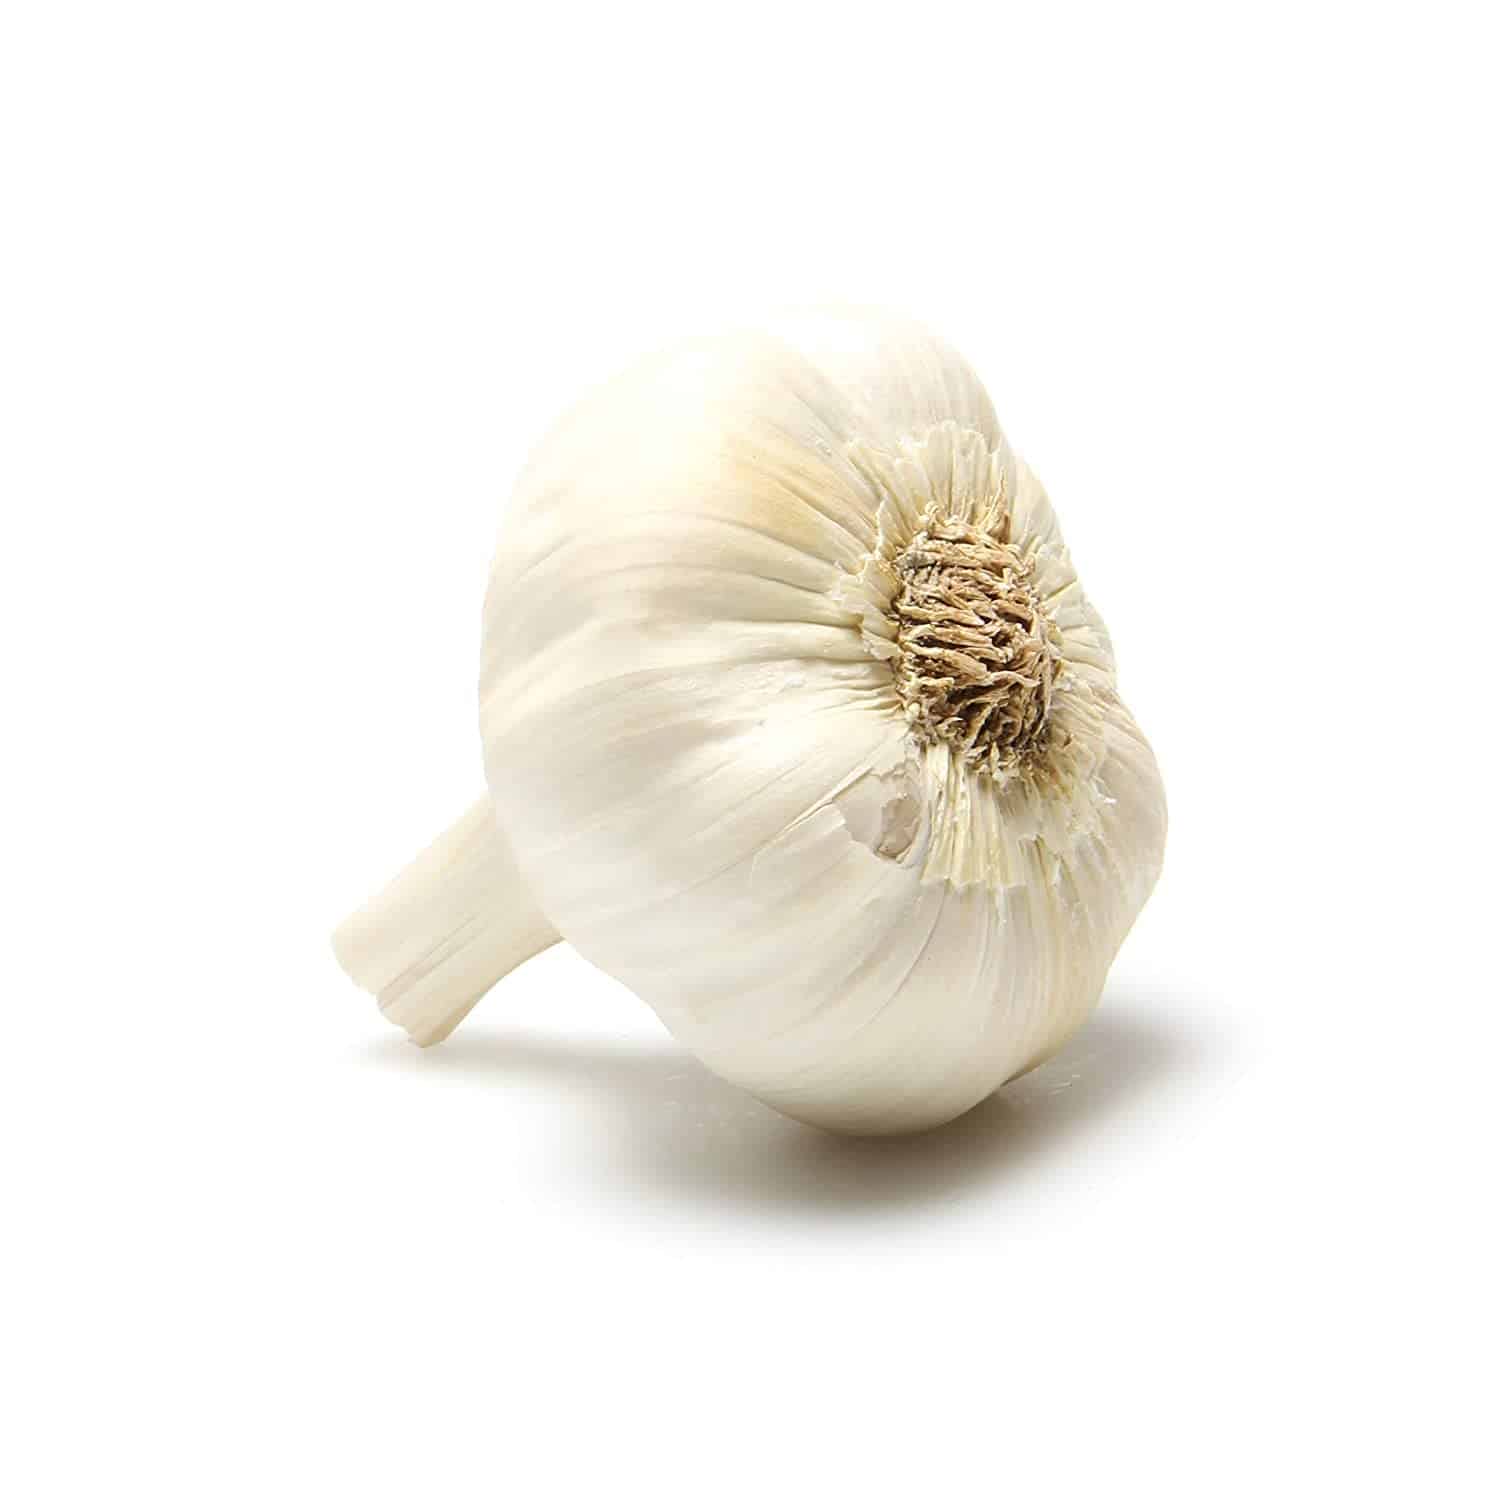 Organic Garlic, Per Each